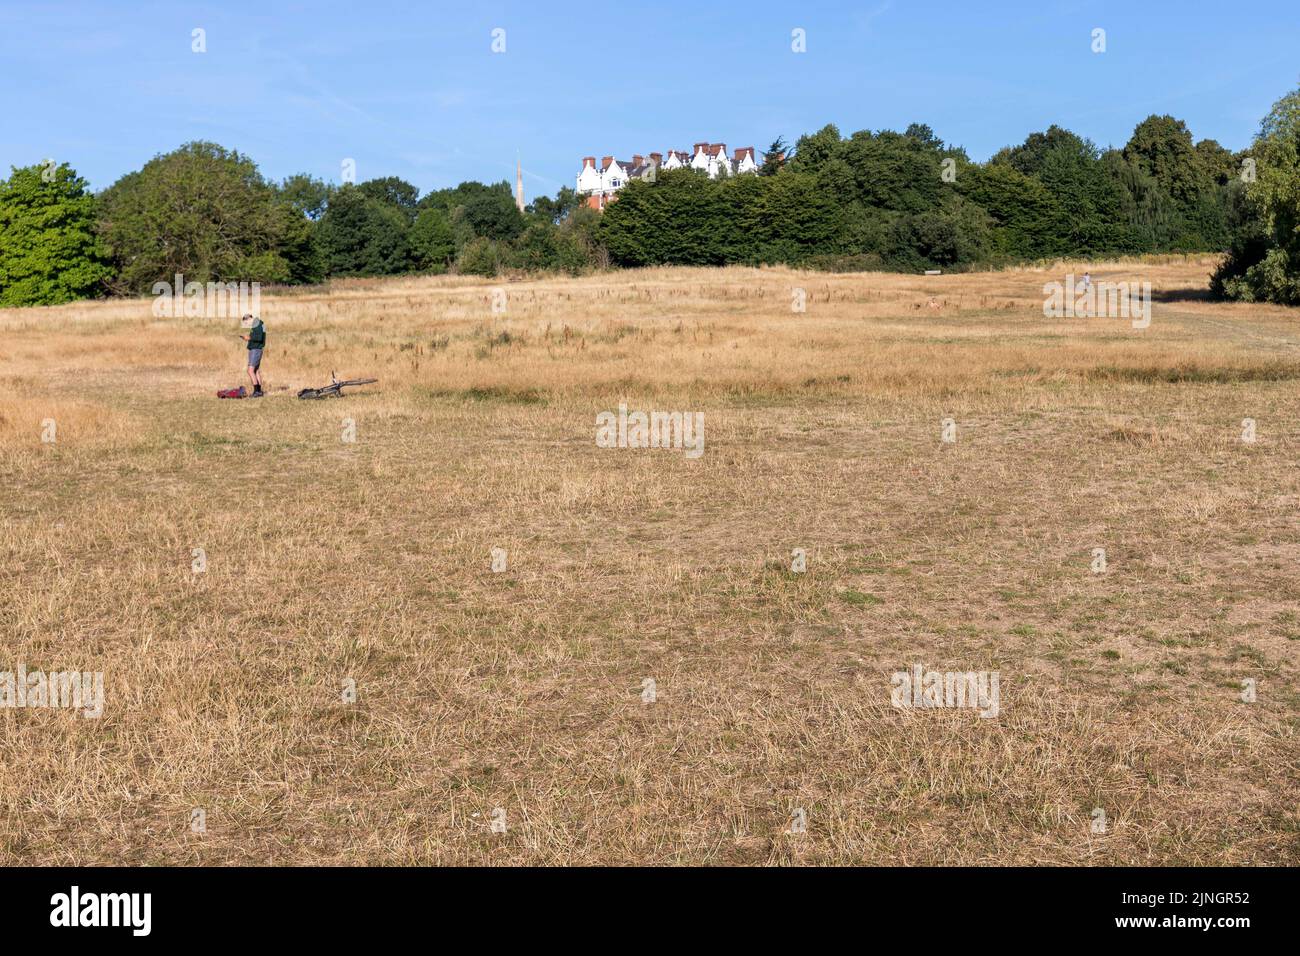 Si vede che l'erba si è asciugata ad Hampstead Heath questa mattina, mentre Londra sperimenta temperature elevate e clima secco nella prossima settimana. Immagine sh Foto Stock